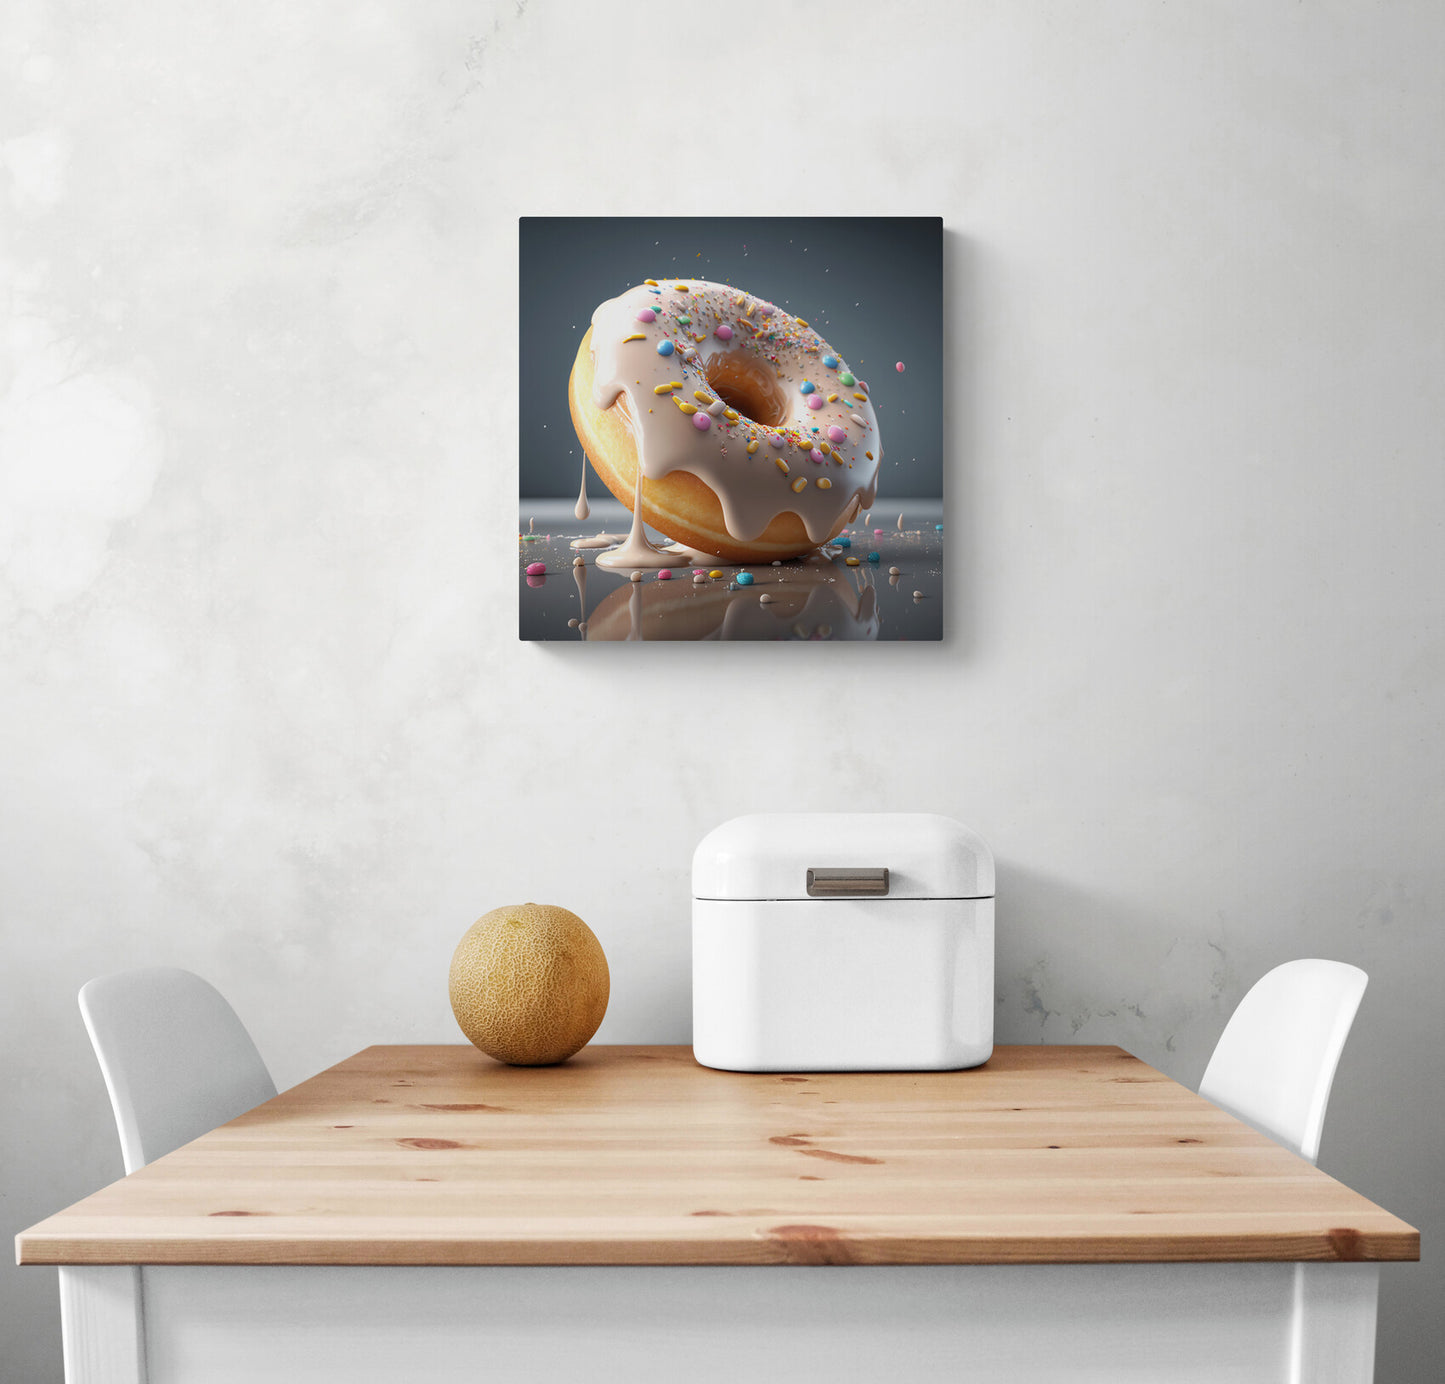 Petit tableau photo sur le mur d'une cuisine d'un donut moelleux et fondants en haute-définition. Sa saveur semble fruitée et sucré. Le glaçage couleur neige recouvre ce délicieux gâteau léger et crémeux. Des toppings multicolores viennent offrir une jolie touche esthétique à ce délice.